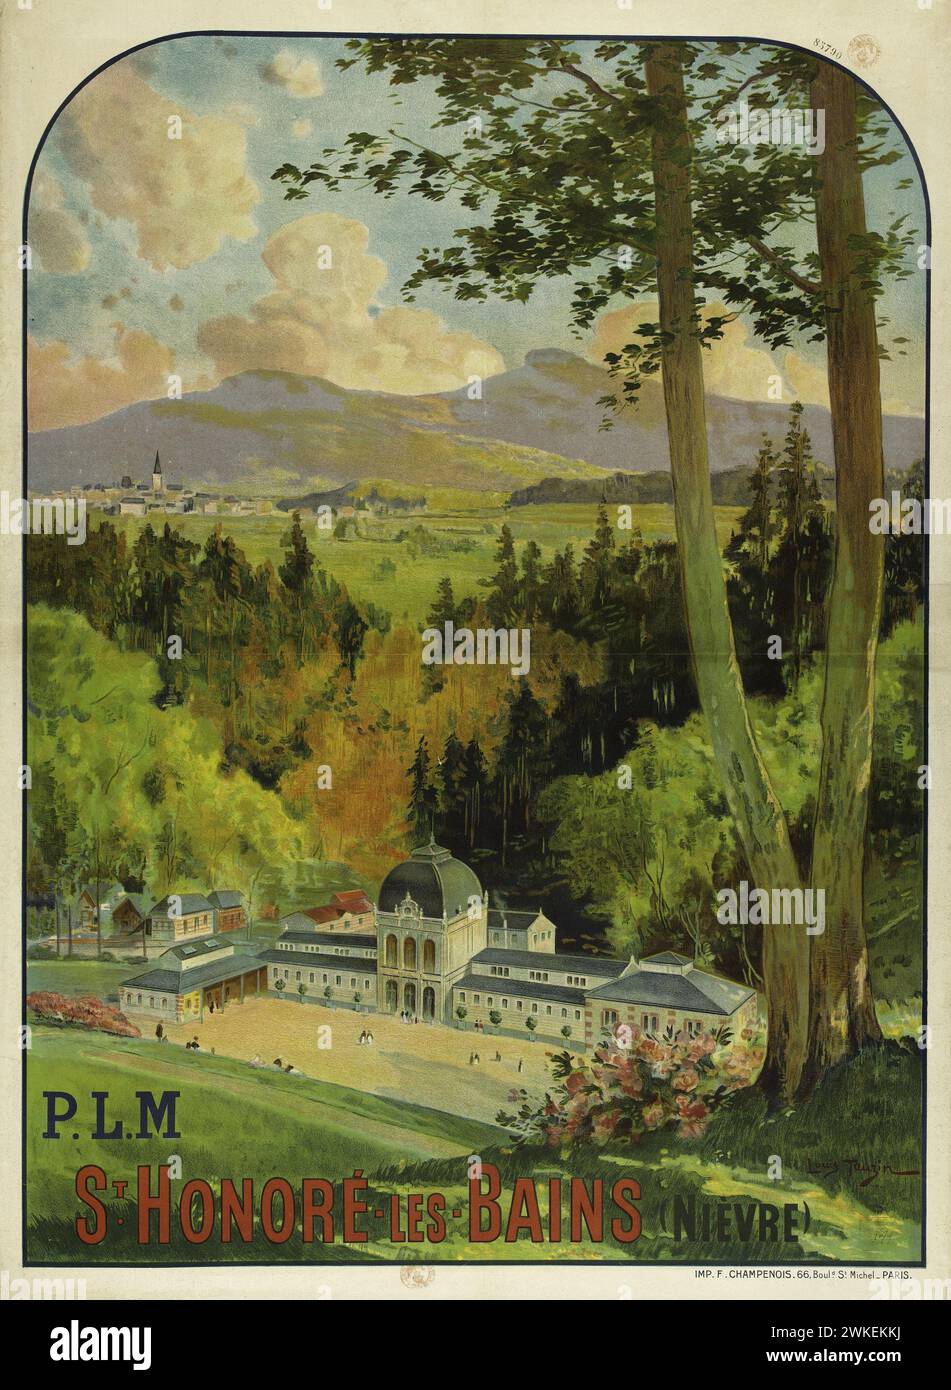 P.L.M. St Honoré-les-Bains (Nièvre). Museum: PRIVATE COLLECTION. Author: LOUIS TAUZIN. Stock Photo